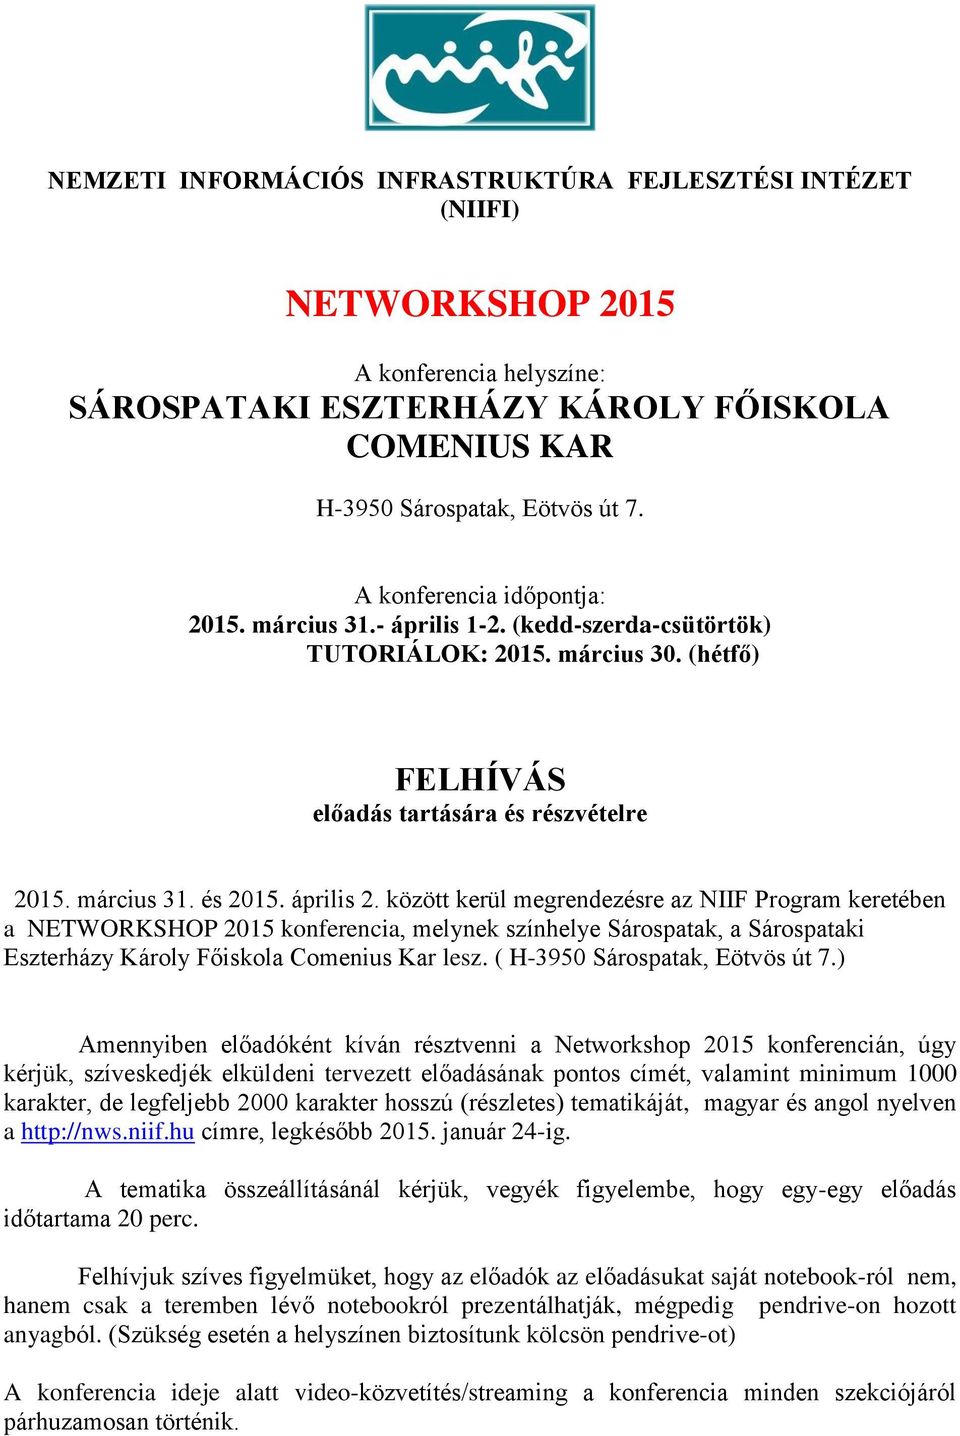 között kerül megrendezésre az NIIF Program keretében a NETWORKSHOP 2015 konferencia, melynek színhelye Sárospatak, a Sárospataki Eszterházy Károly Főiskola Comenius Kar lesz.